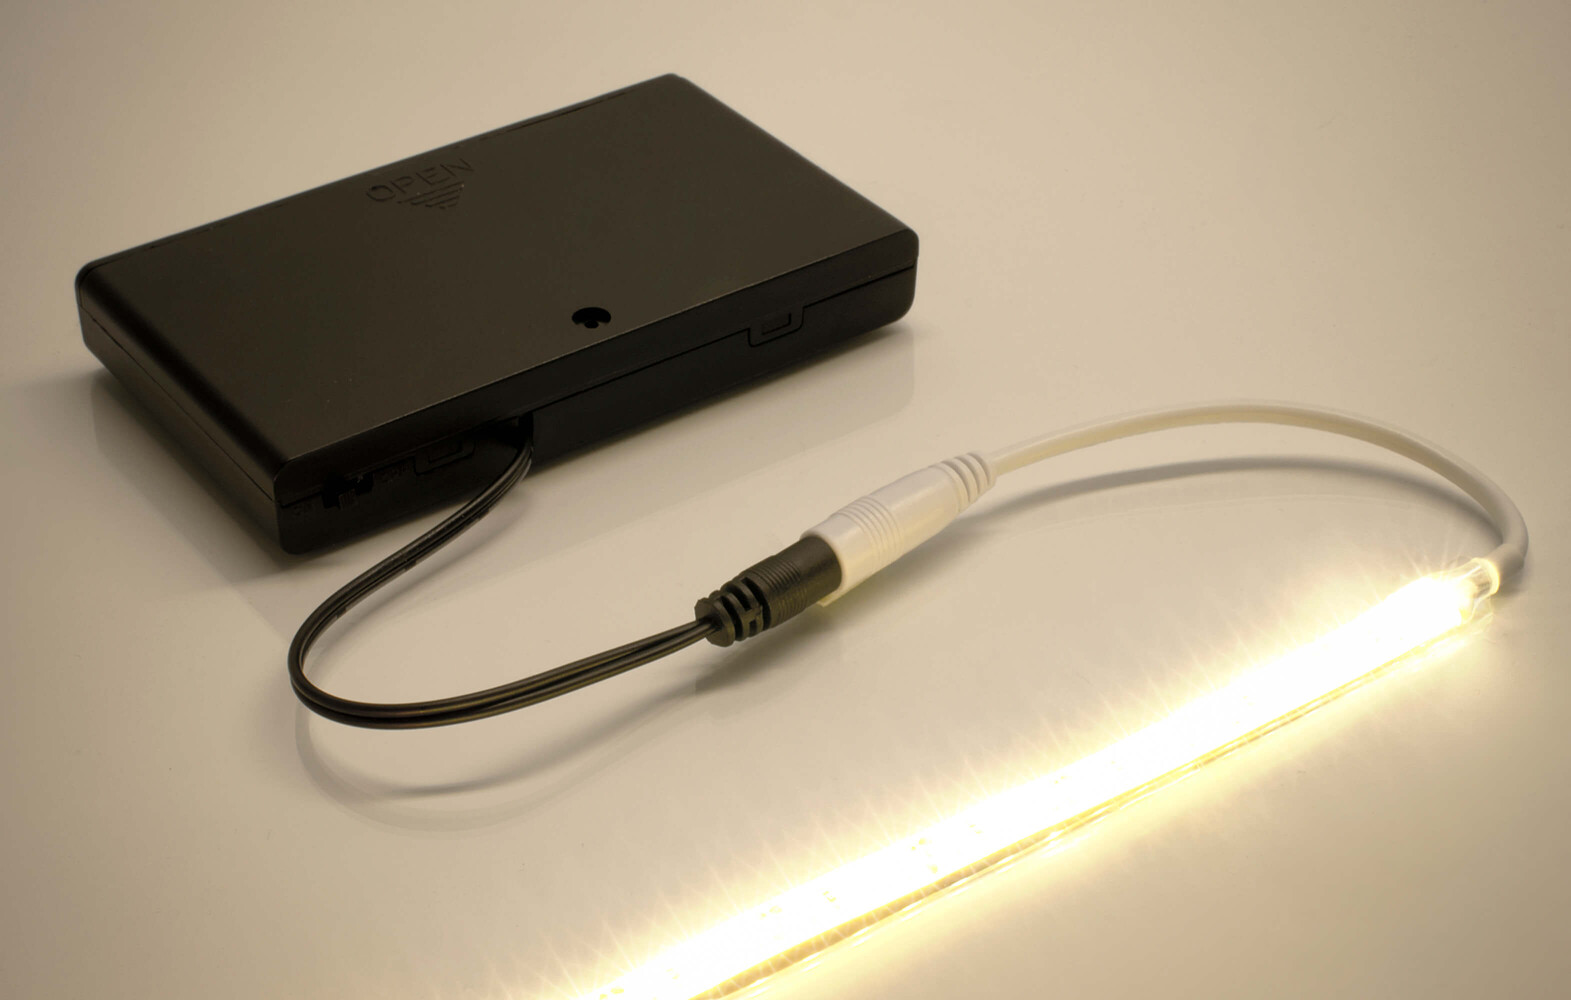 LED Universum Batteriebox für mobile LED Anwendungen mit praktischer Handhabung